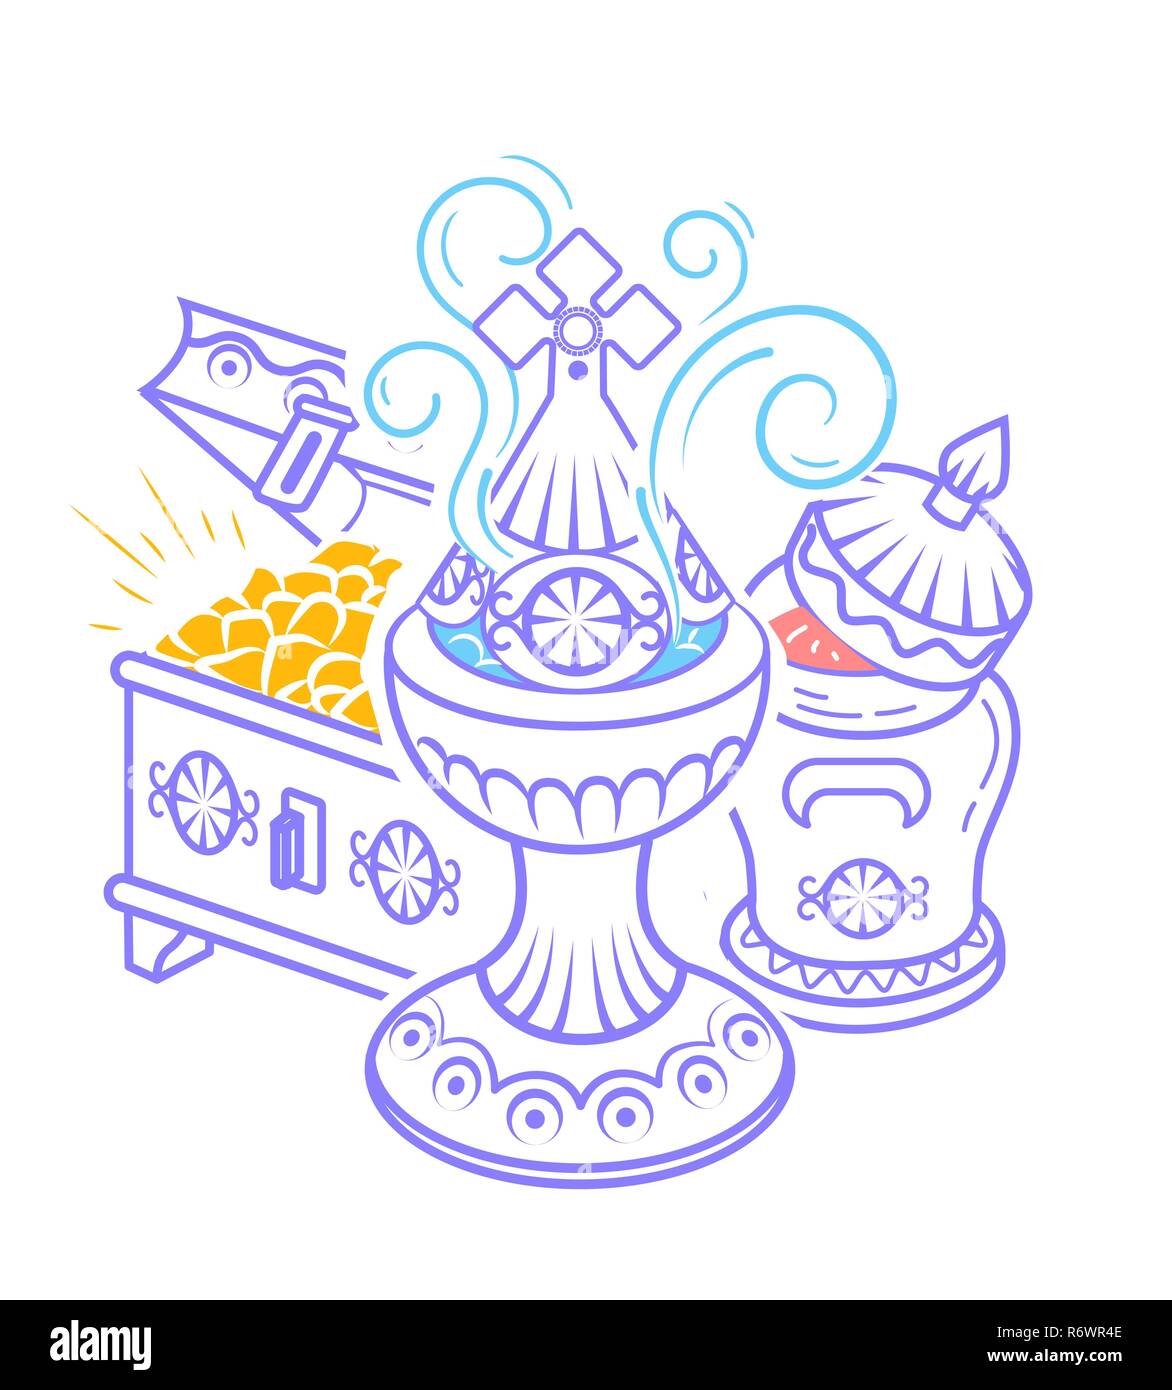 Dans l'icône style dessiné à la main avec des Mages offerts pour célébrer l'Épiphanie : encens, myrrhe et l'or. Icône dans un style linéaire Illustration de Vecteur